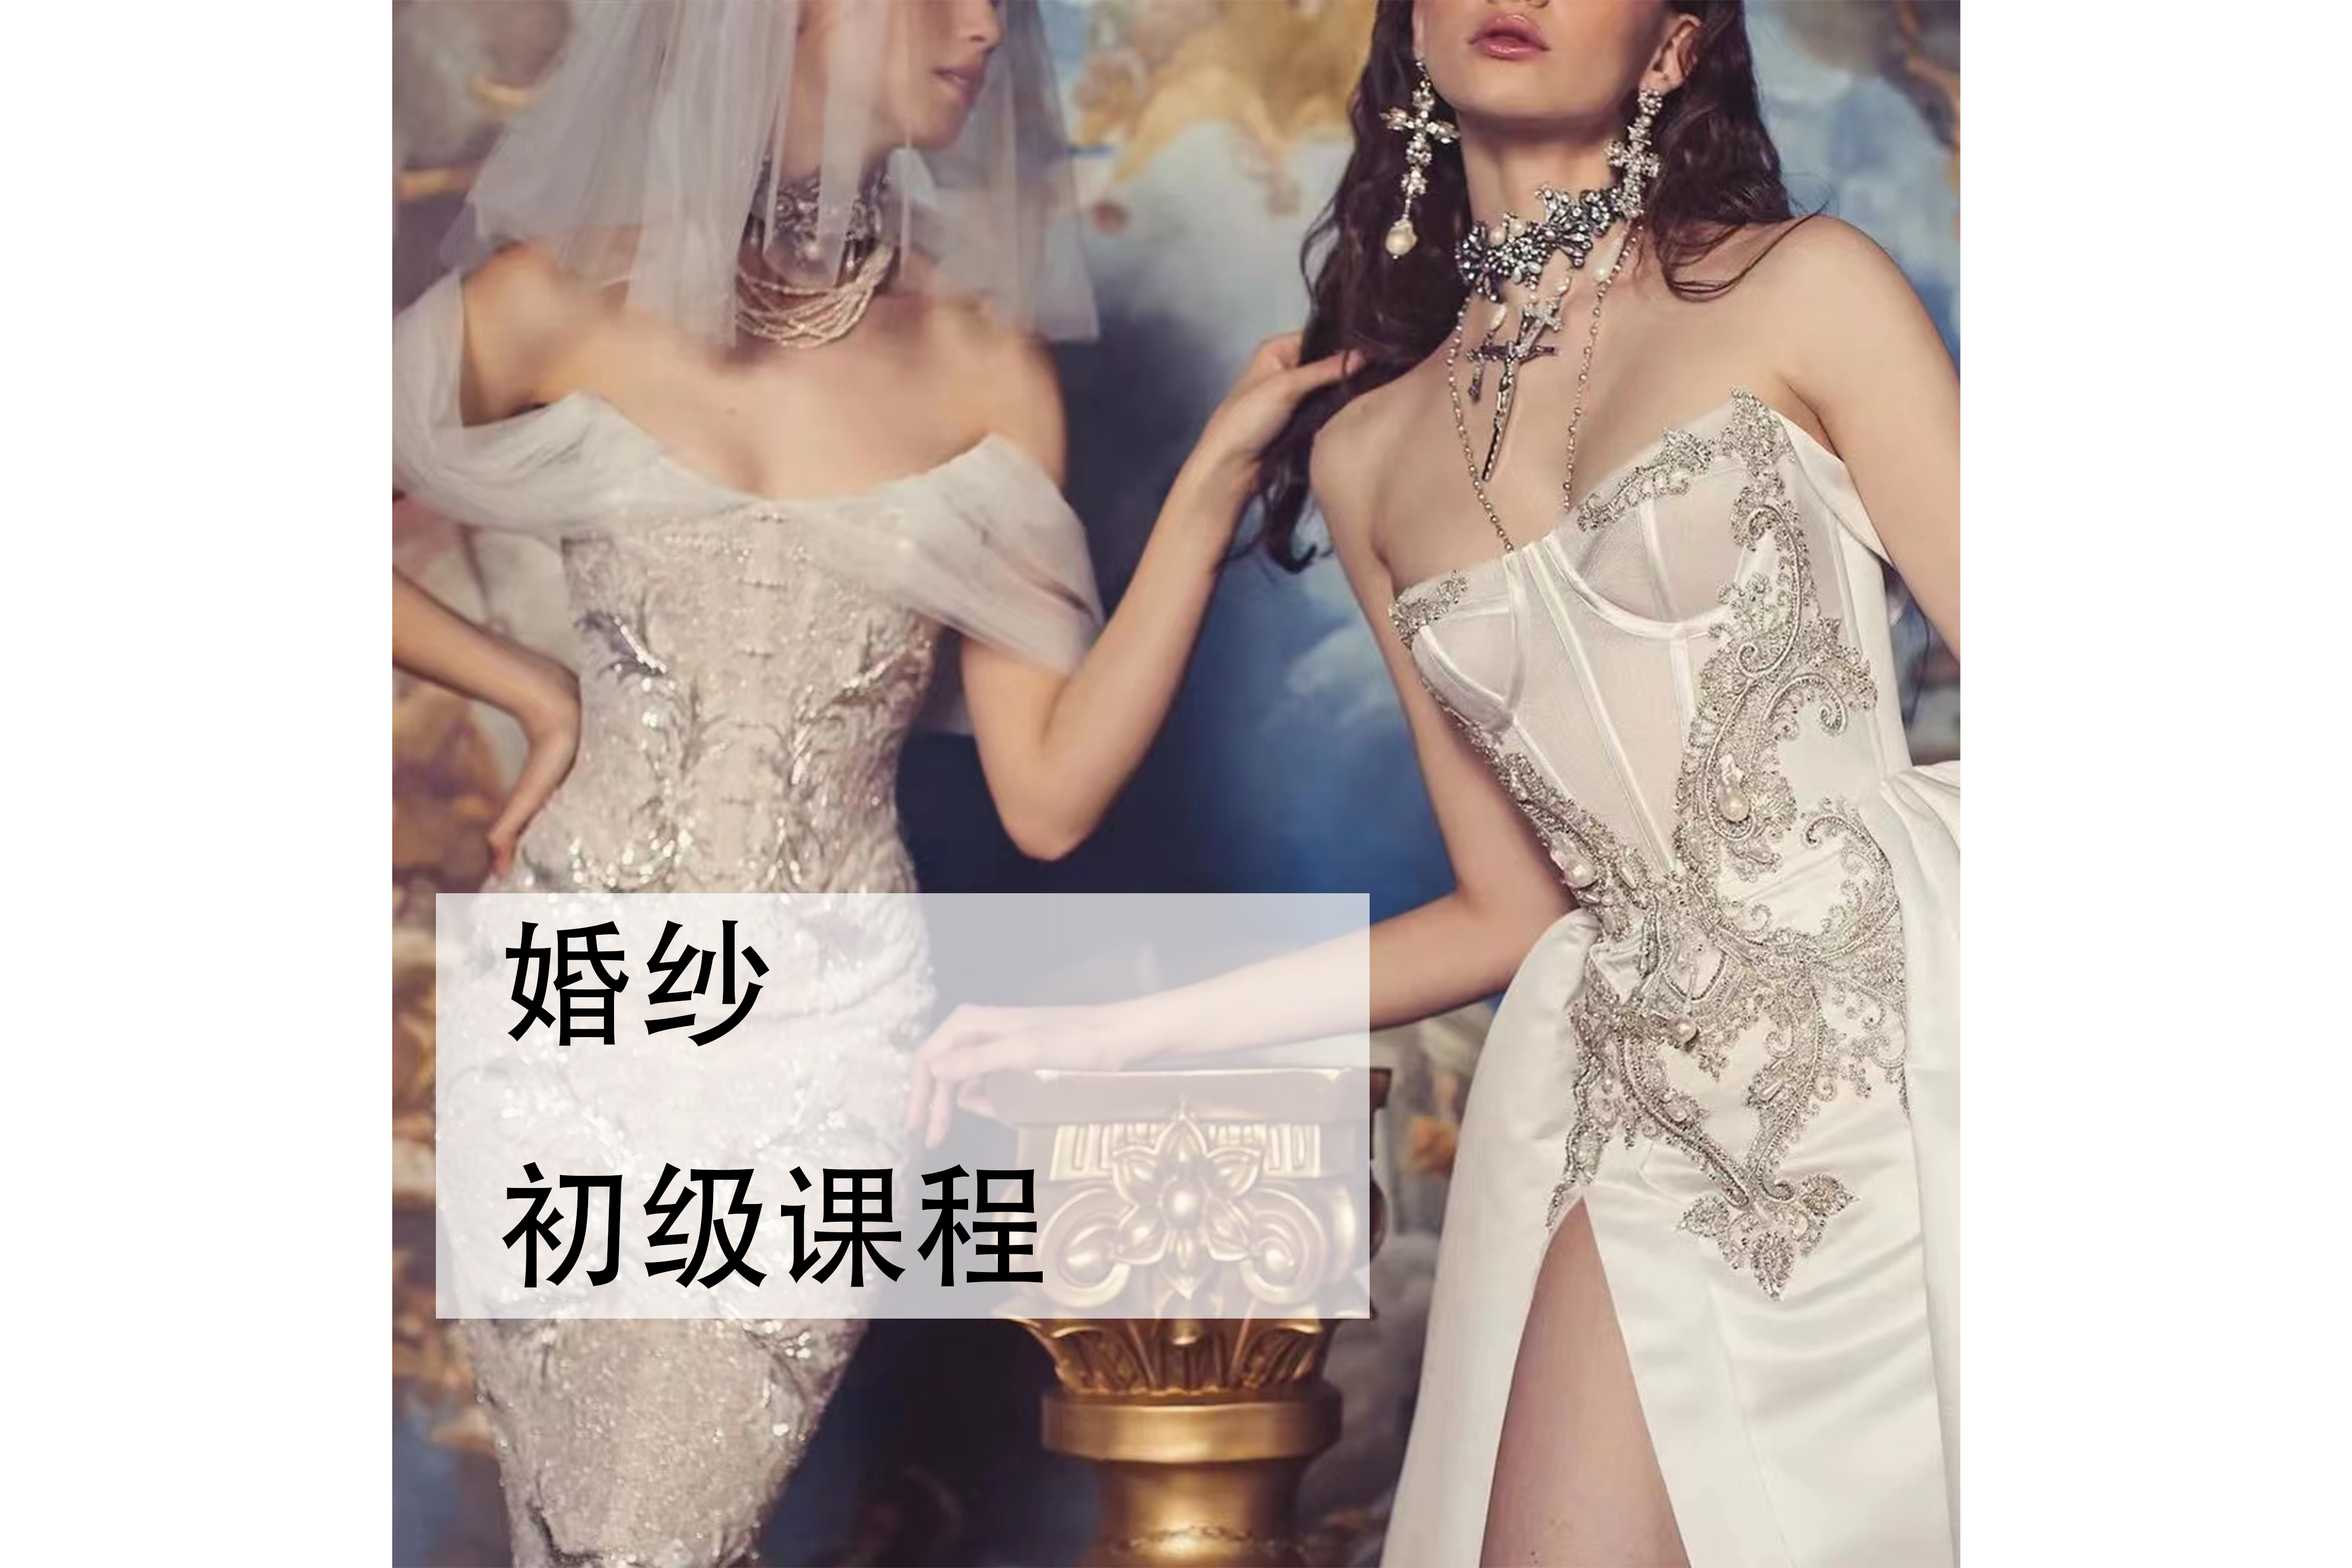 IAS服装设计学院深圳婚纱设计初级课程图片